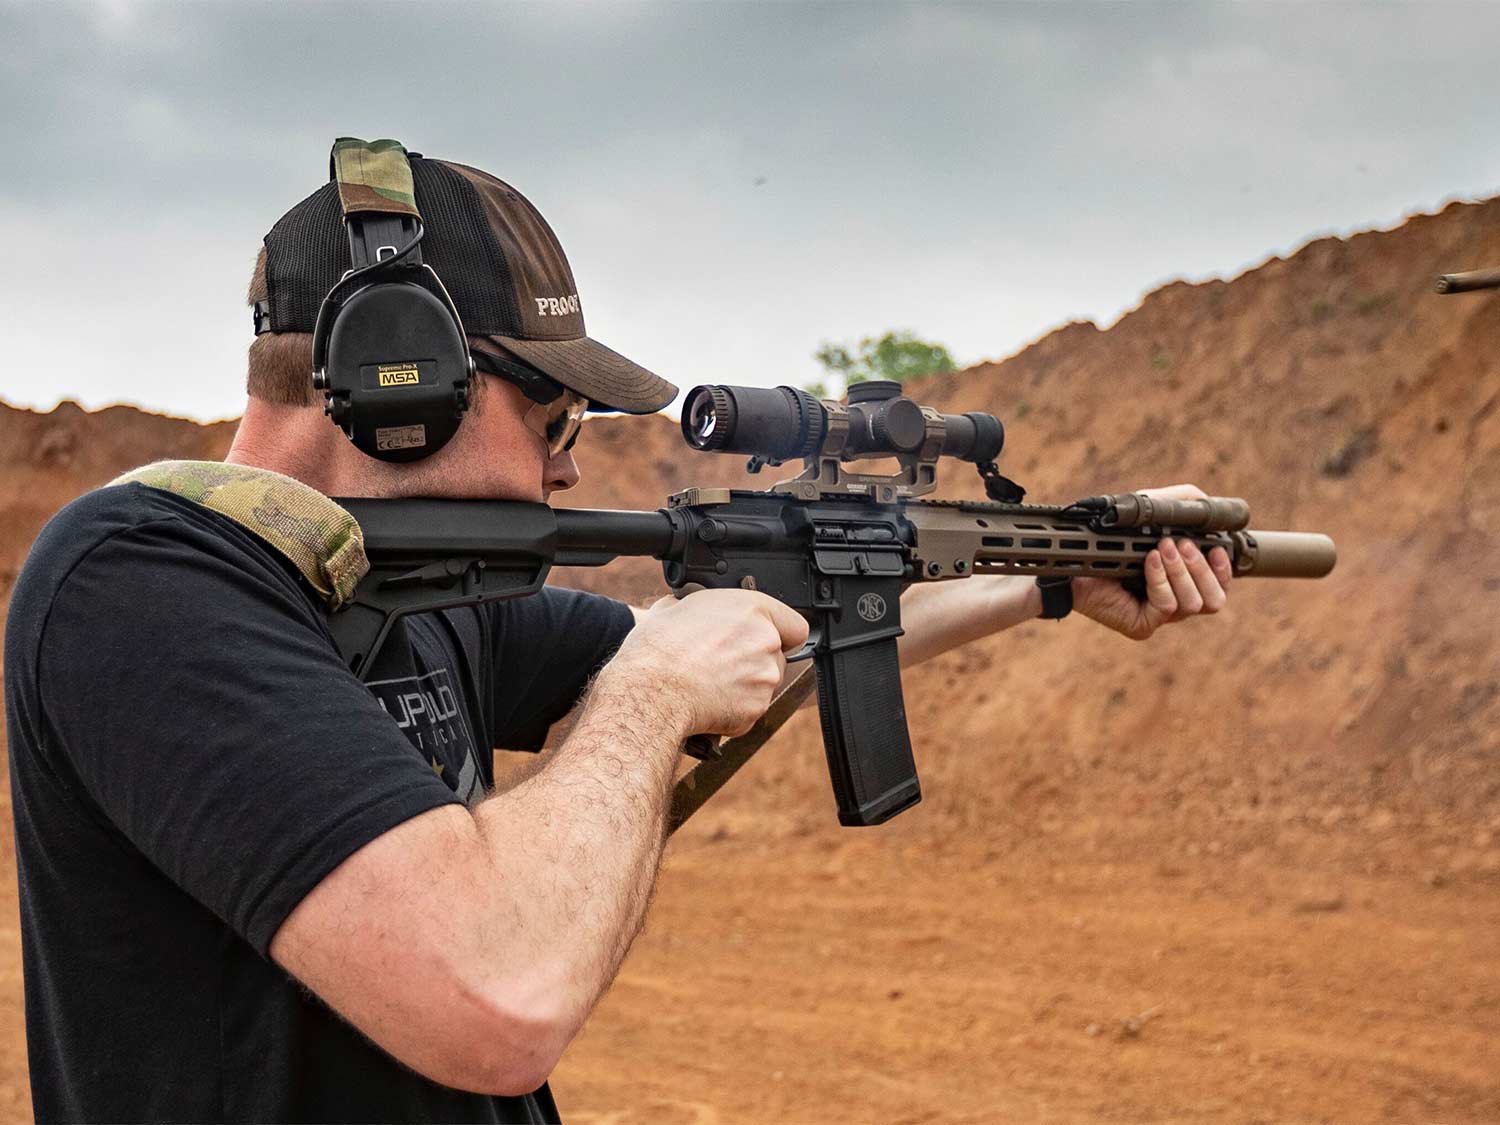 A man aims a rifle at a shooting range.